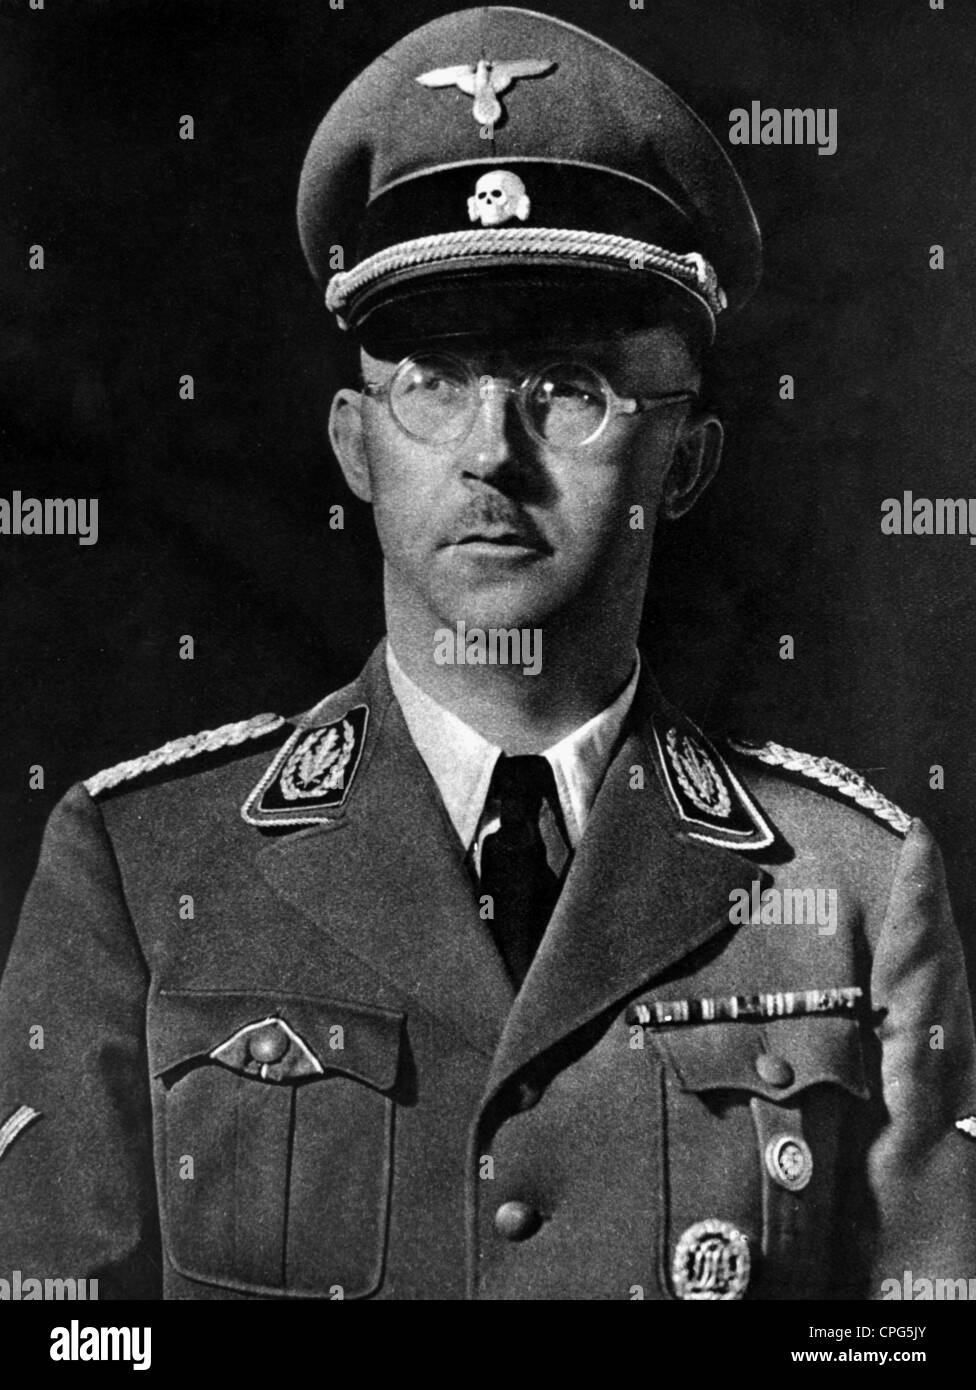 Himmler, Heinrich, 7.10.1900 - 23.5.1945, deutscher Politiker, Reichführer-SS 6.1.1929 - 24.4.1945, Chef der Deutschen Polizei 17.6.1936 - 24.4.1945, Porträt, Beilage zu "Voelkischer Beobachter",1940, Stockfoto